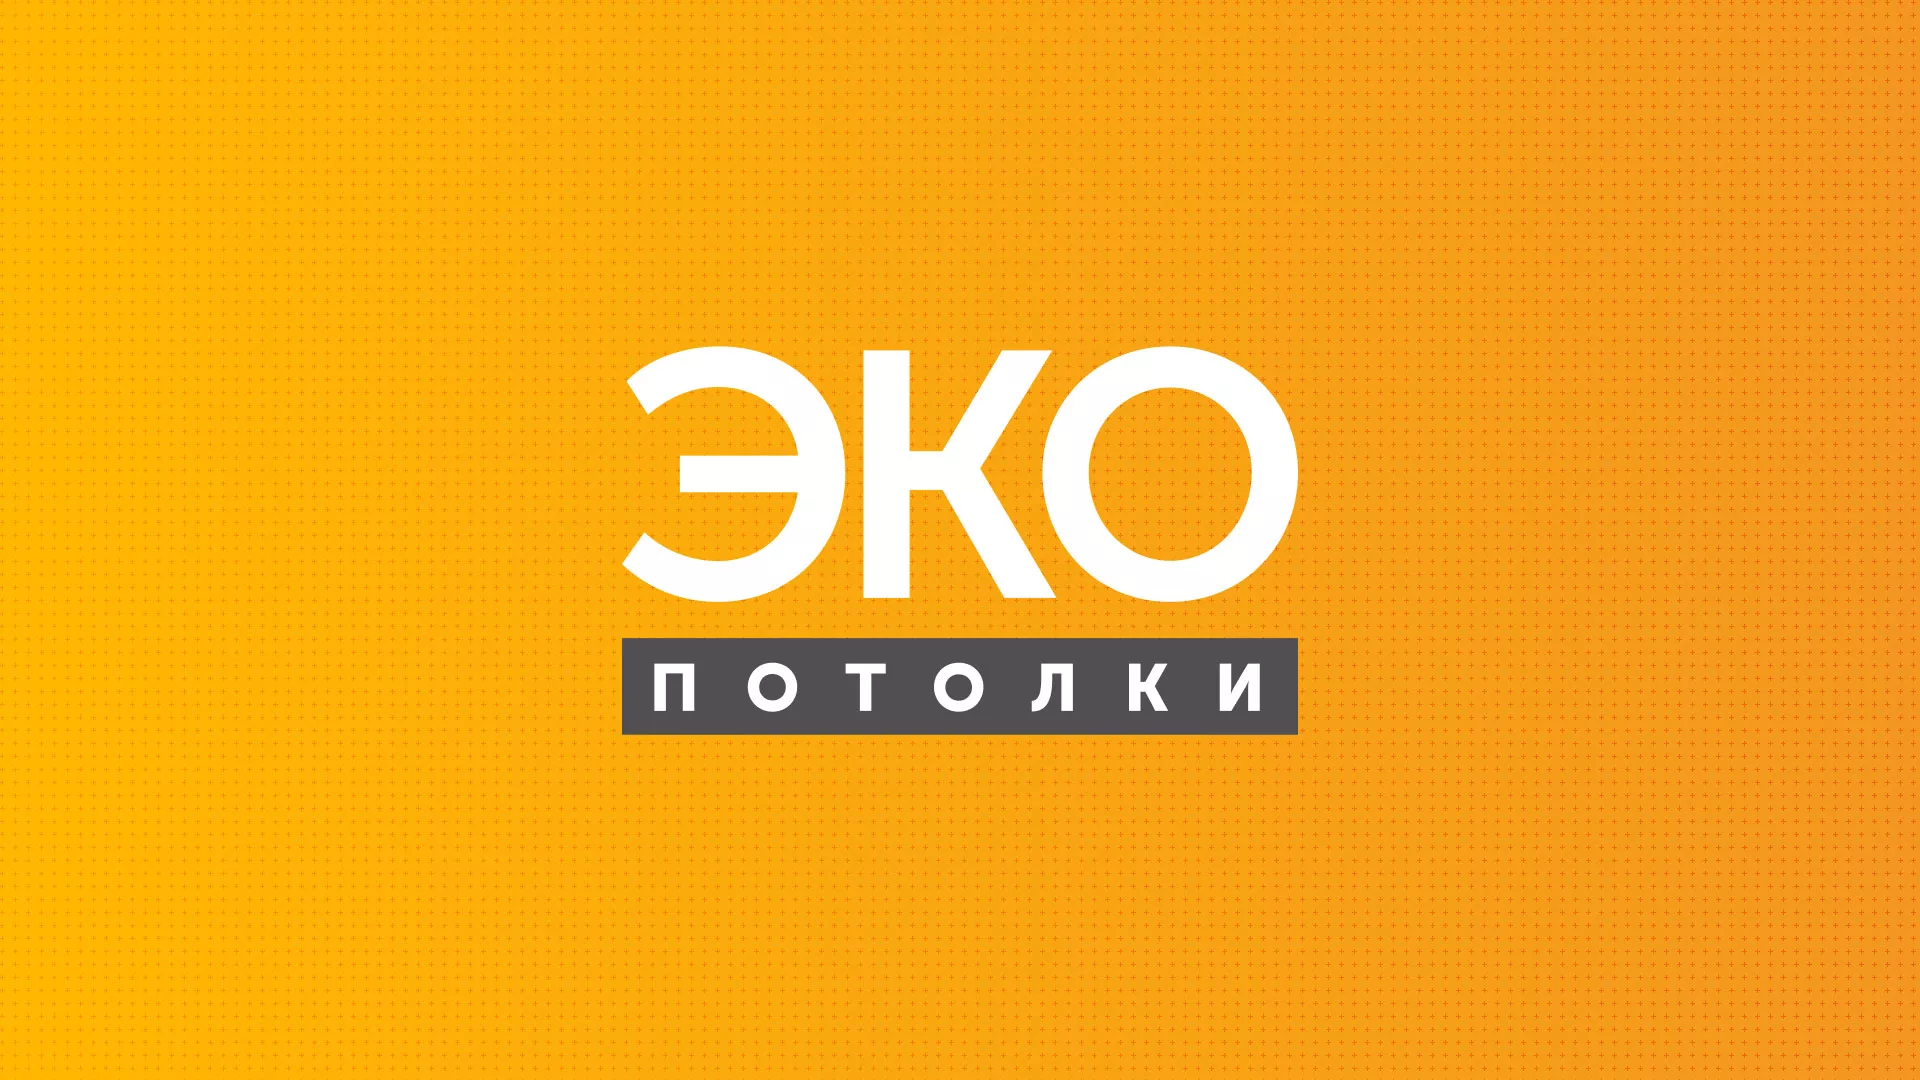 Разработка сайта по натяжным потолкам «Эко Потолки» в Рыбном